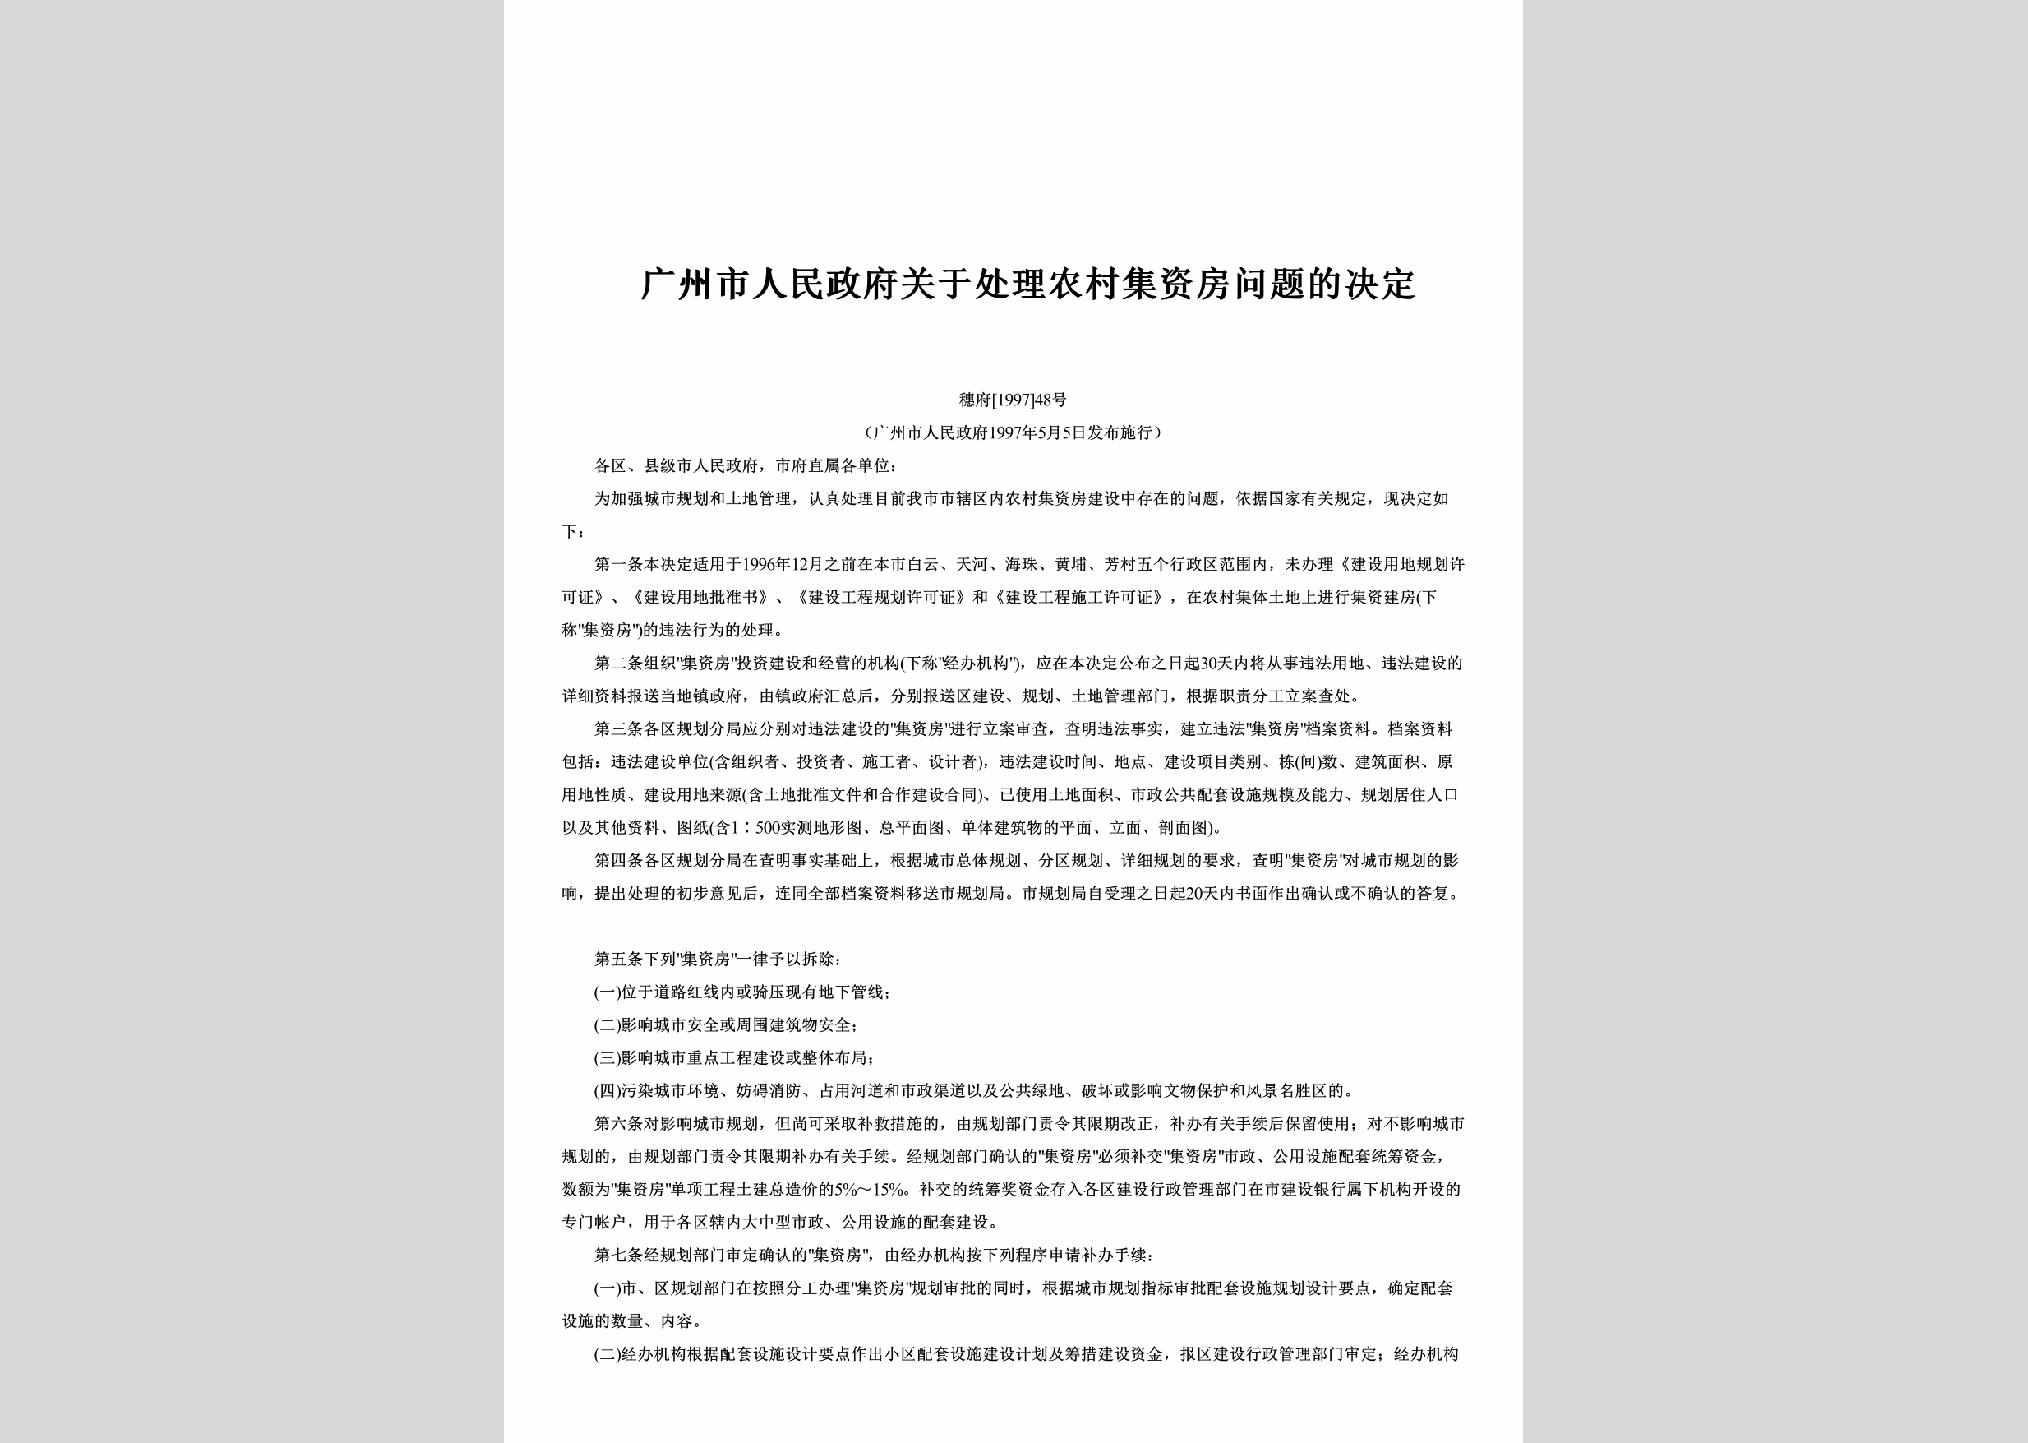 穗府[1997]48号：广州市人民政府关于处理农村集资房问题的决定